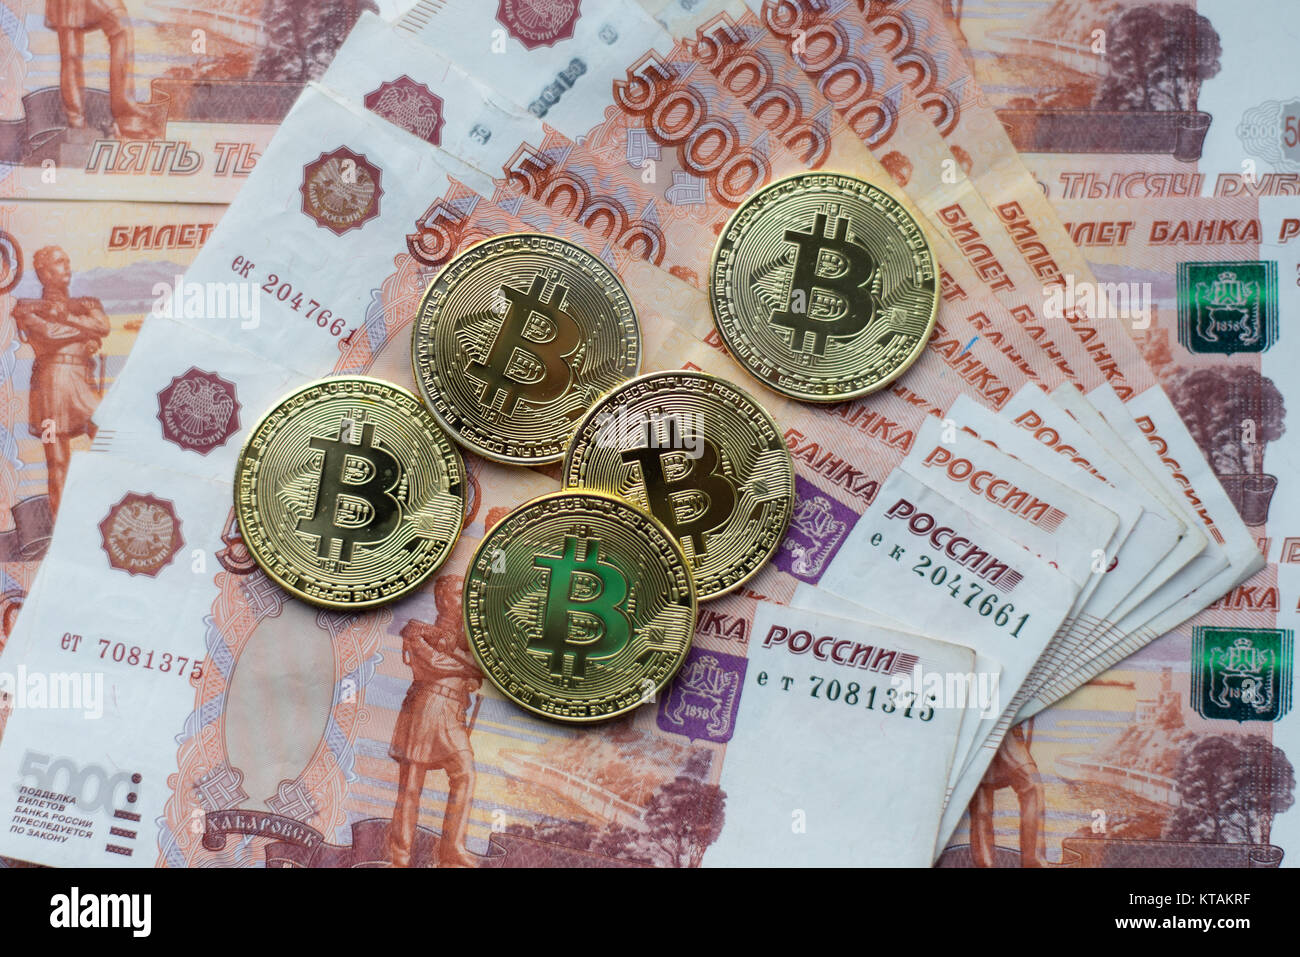 Обмен рубли на биткоин с минимальной комиссией я монета отзывы